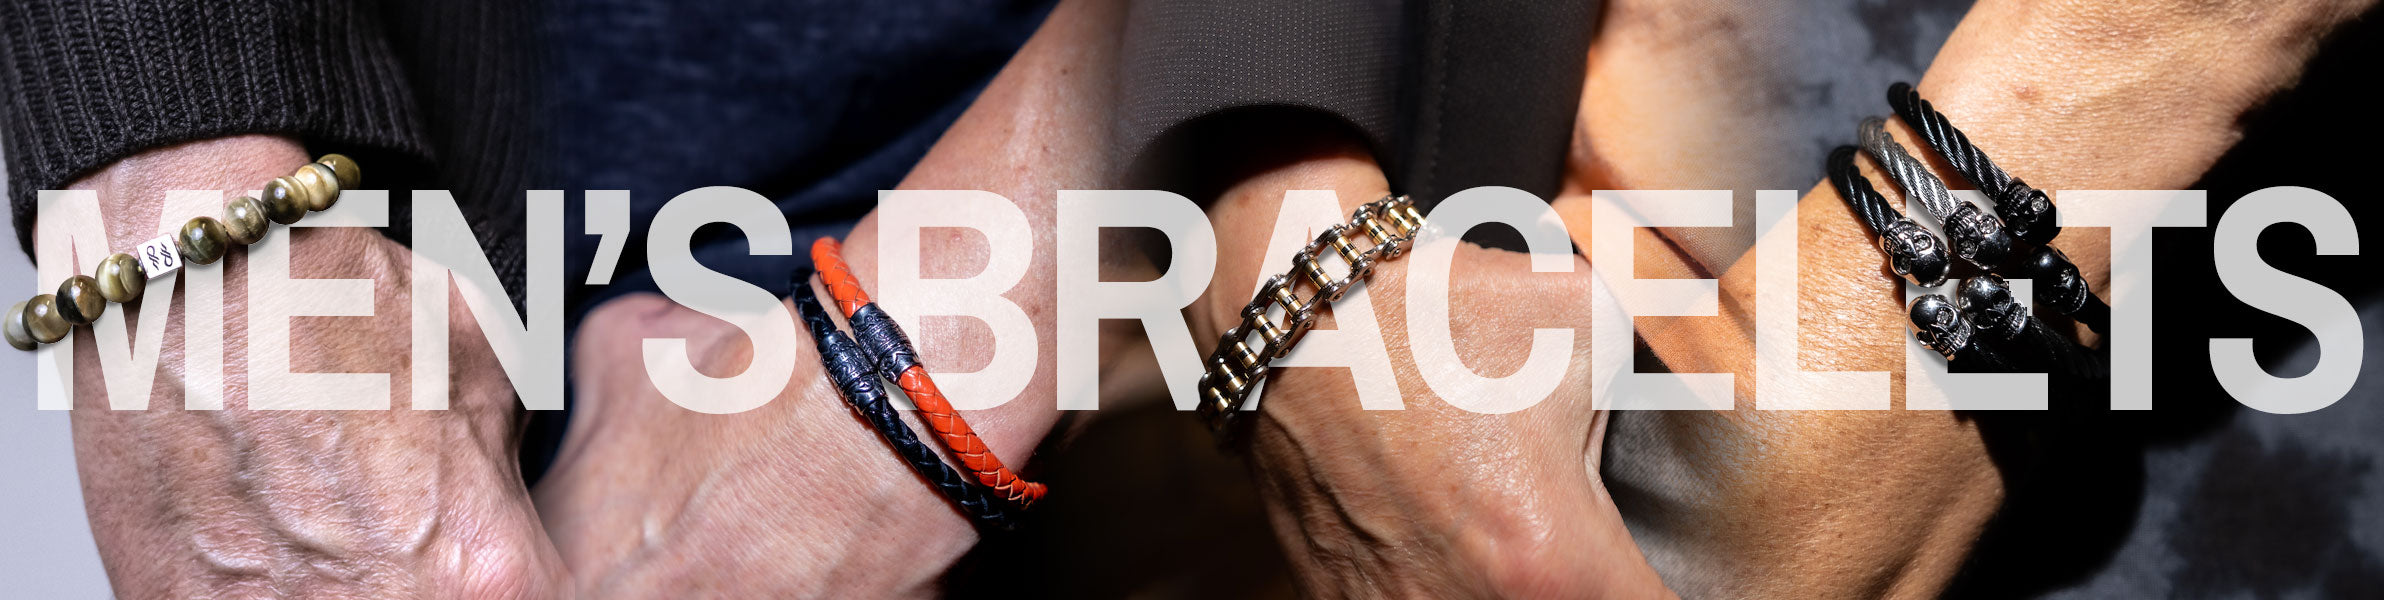 Bracelets Collection for Men